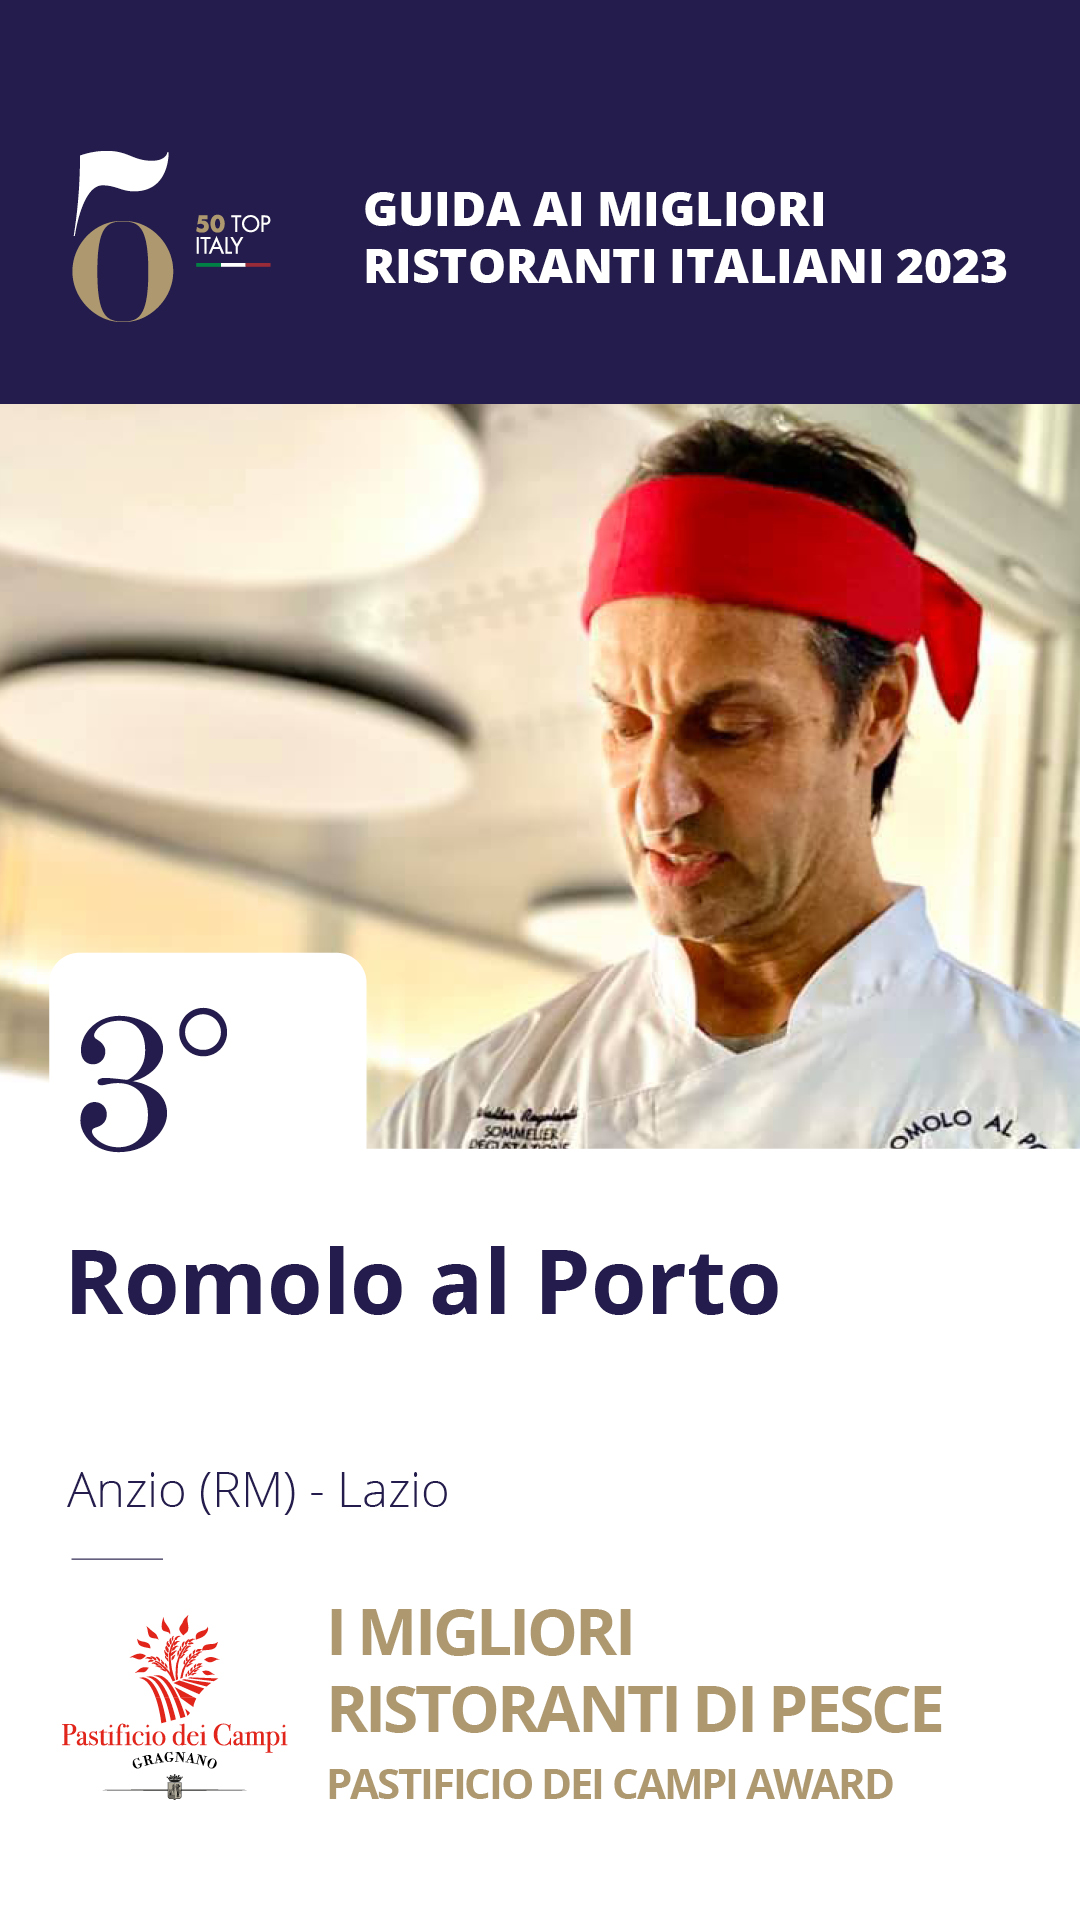 3 - Romolo al Porto - Anzio (RM), Lazio